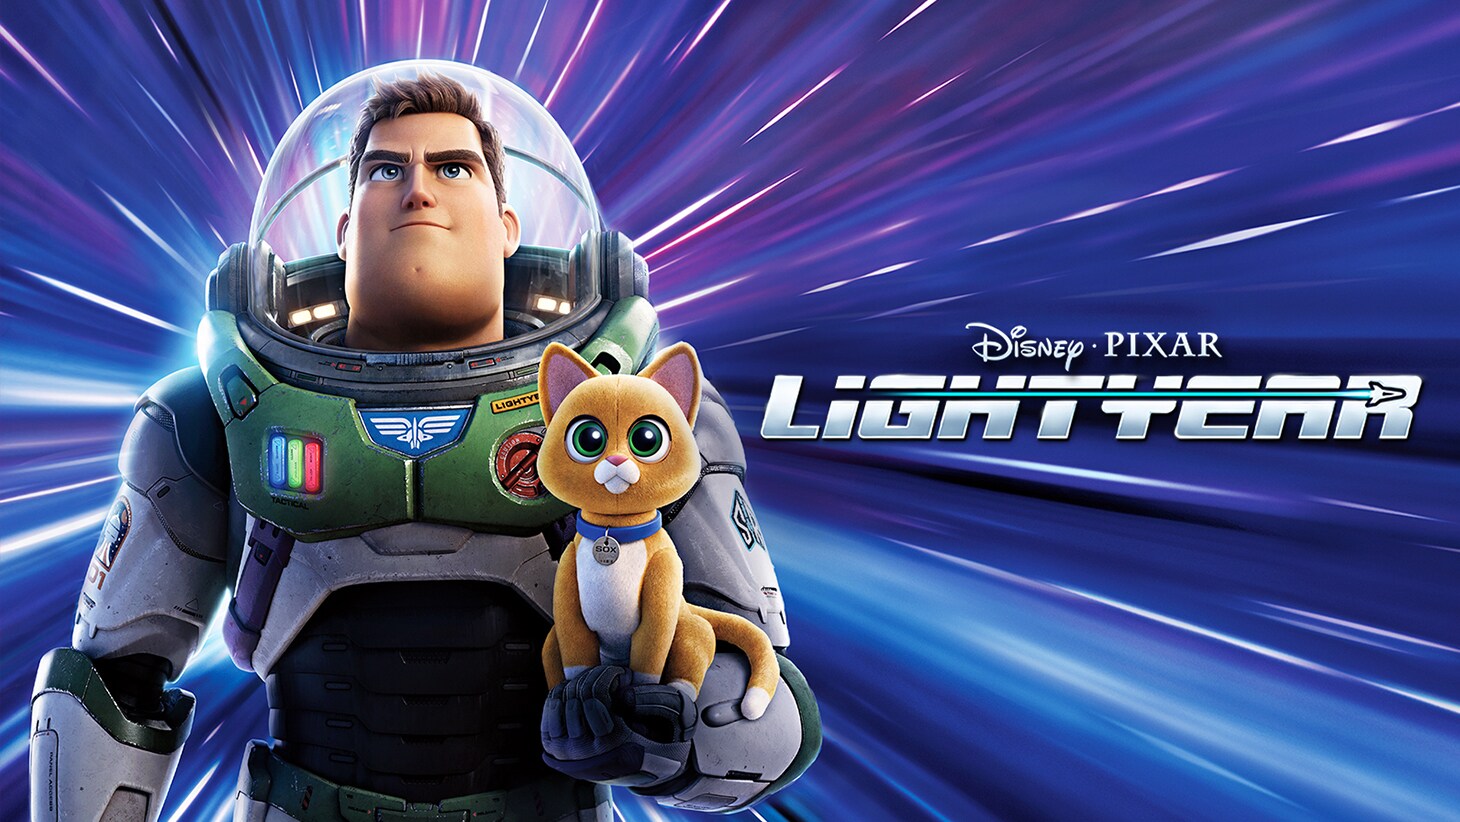 Disney e Pixar | 'Lightyear' - As diferenças com 'Toy Story'